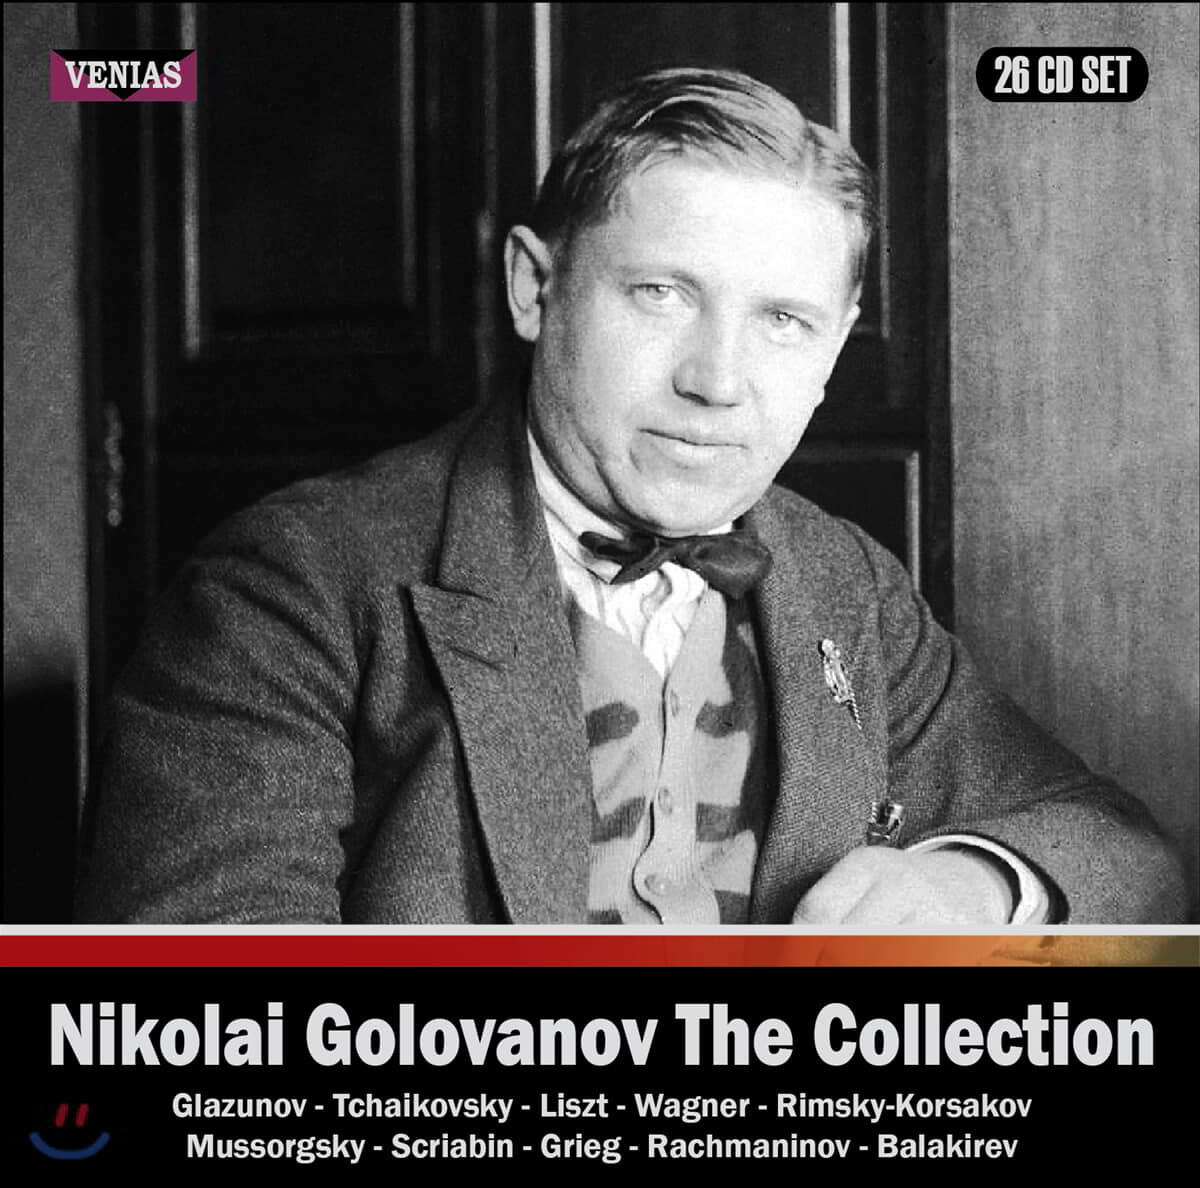 니콜라이 골로바노프 컬렉션 (Nikolai Golovanov The Collection)